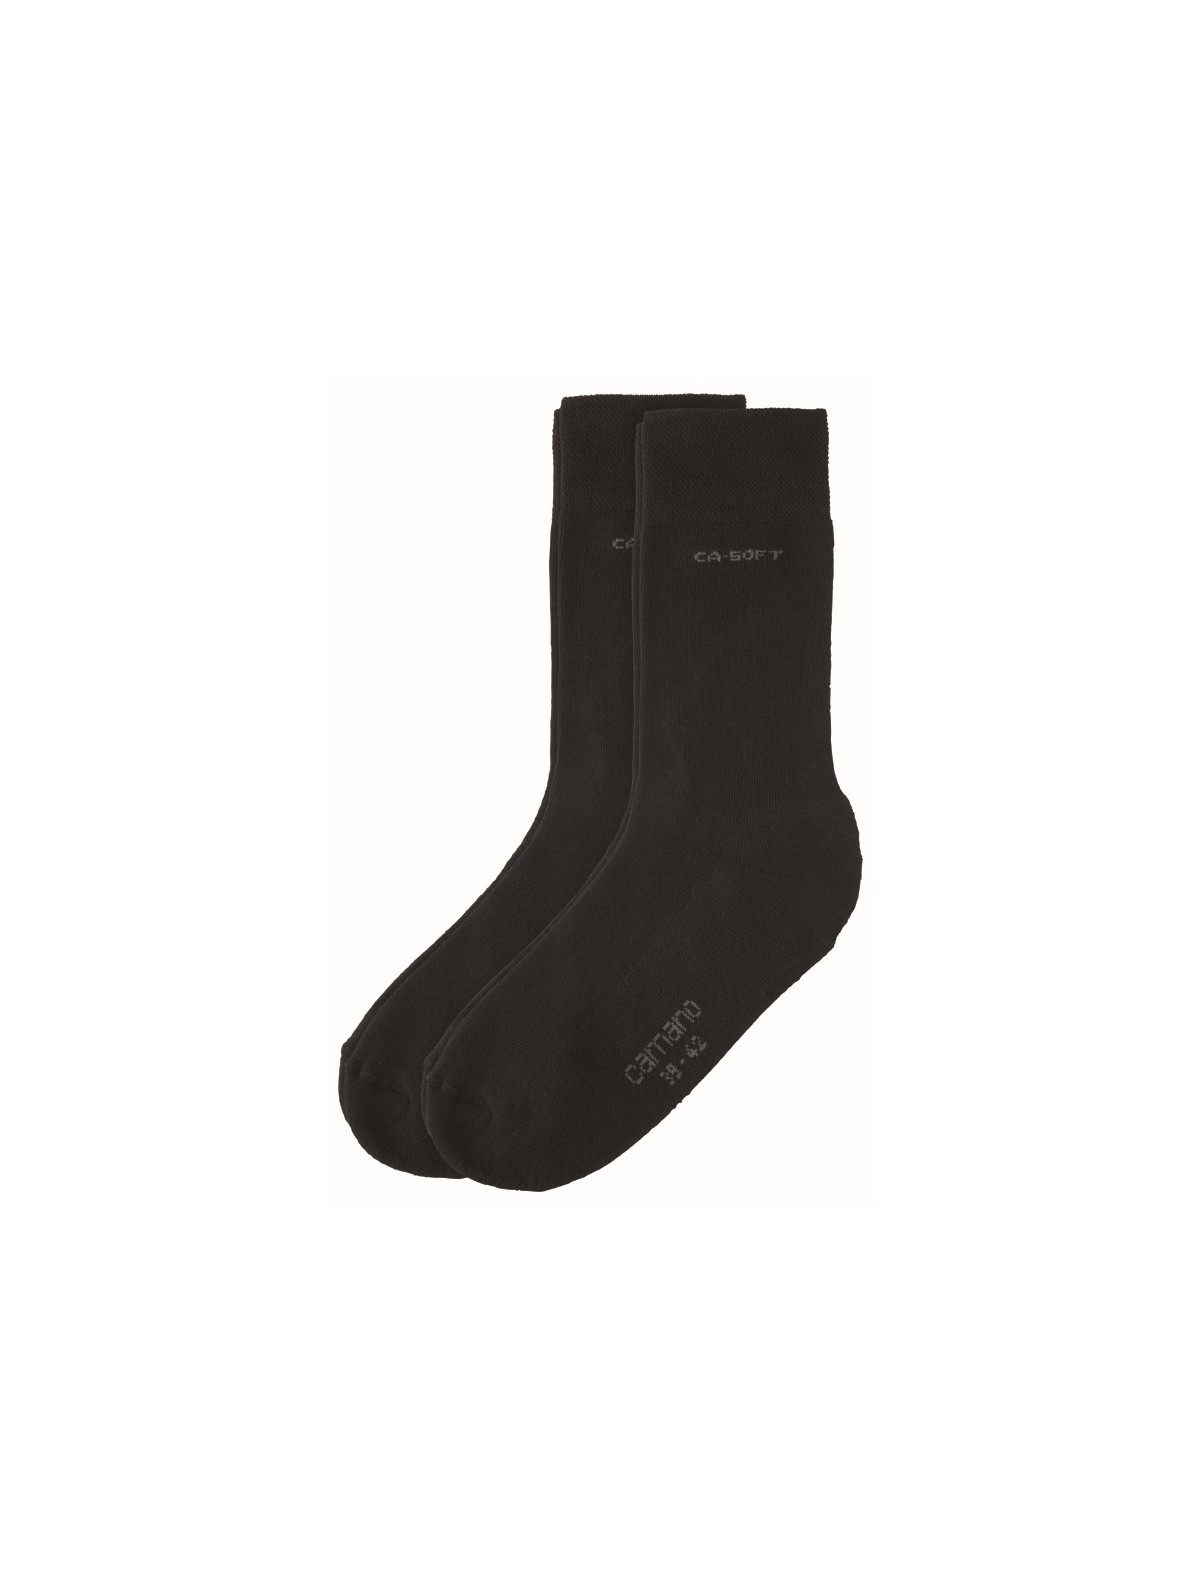 Camano Soft Walk Socken - antrazit melange, dunkelbraun, marine, schwarz,